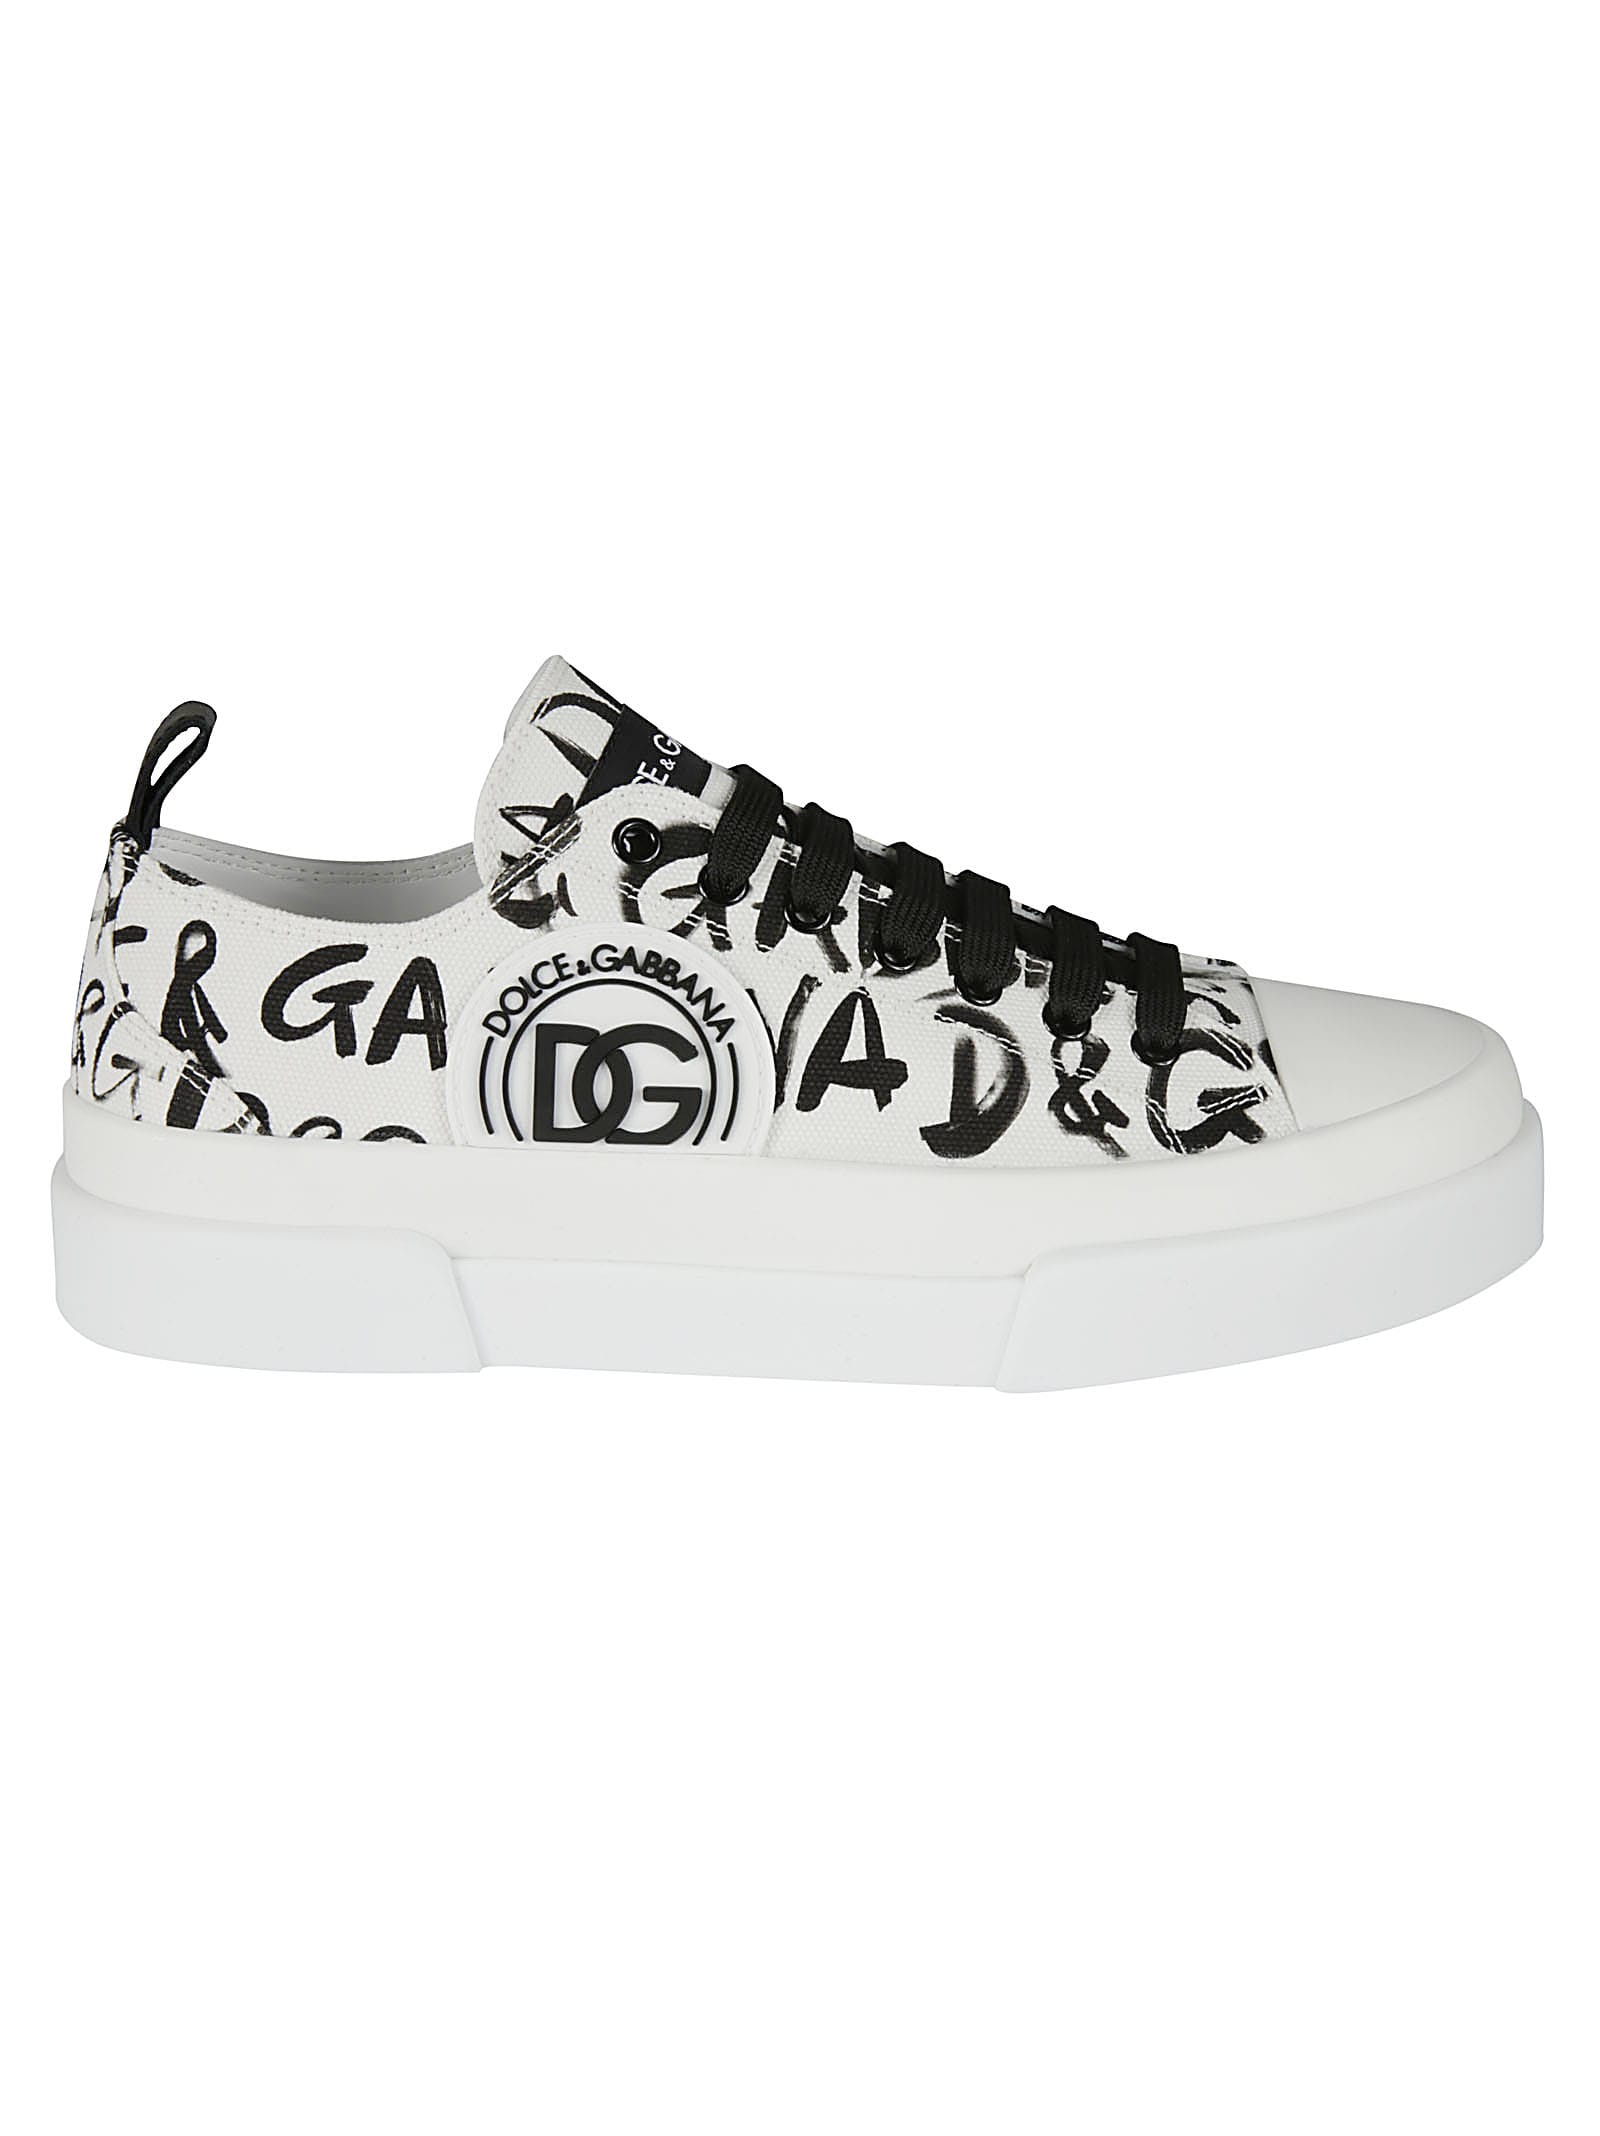 Dolce & Gabbana Low Rubberized Sneakers